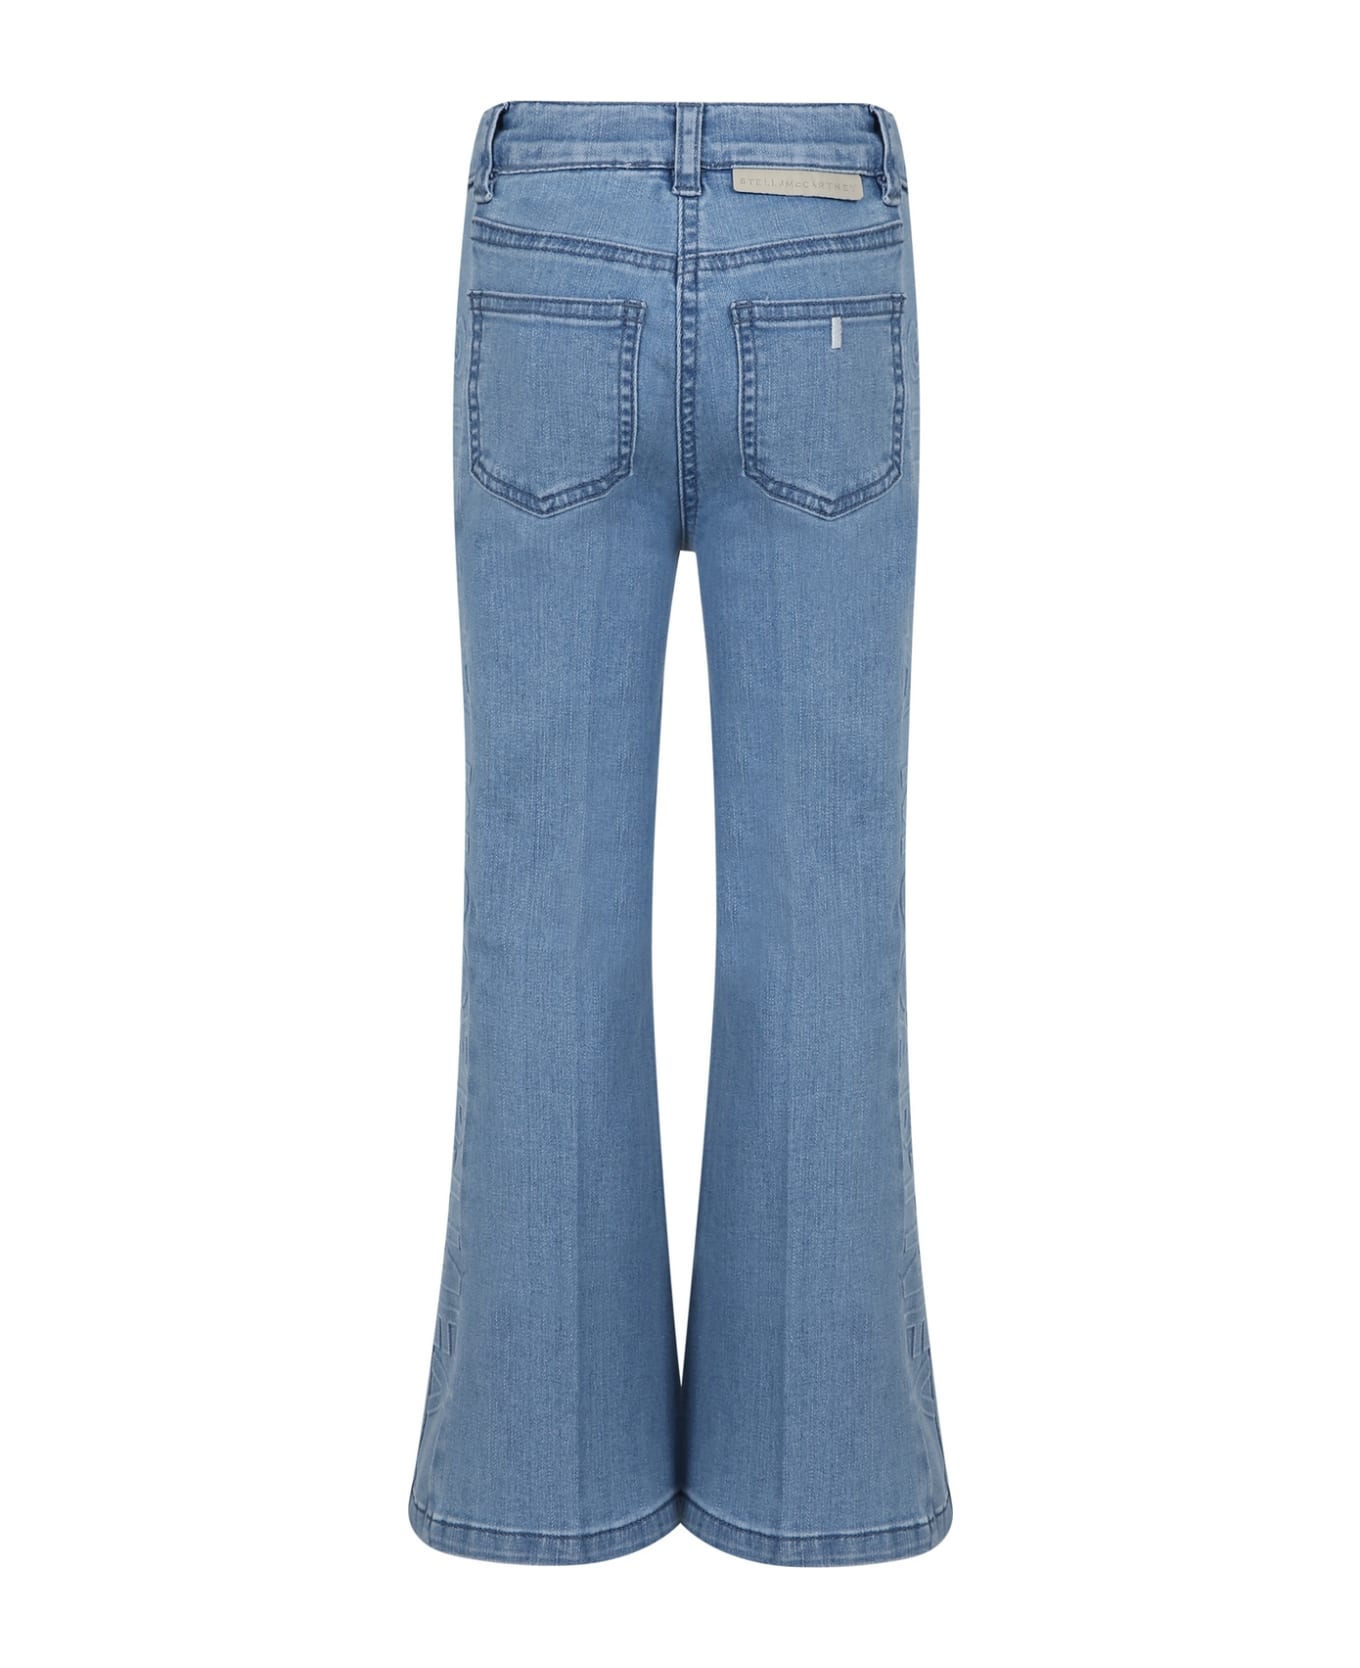 Stella McCartney Kids Light Blue Jeans For Girl With Logo - Denim ボトムス